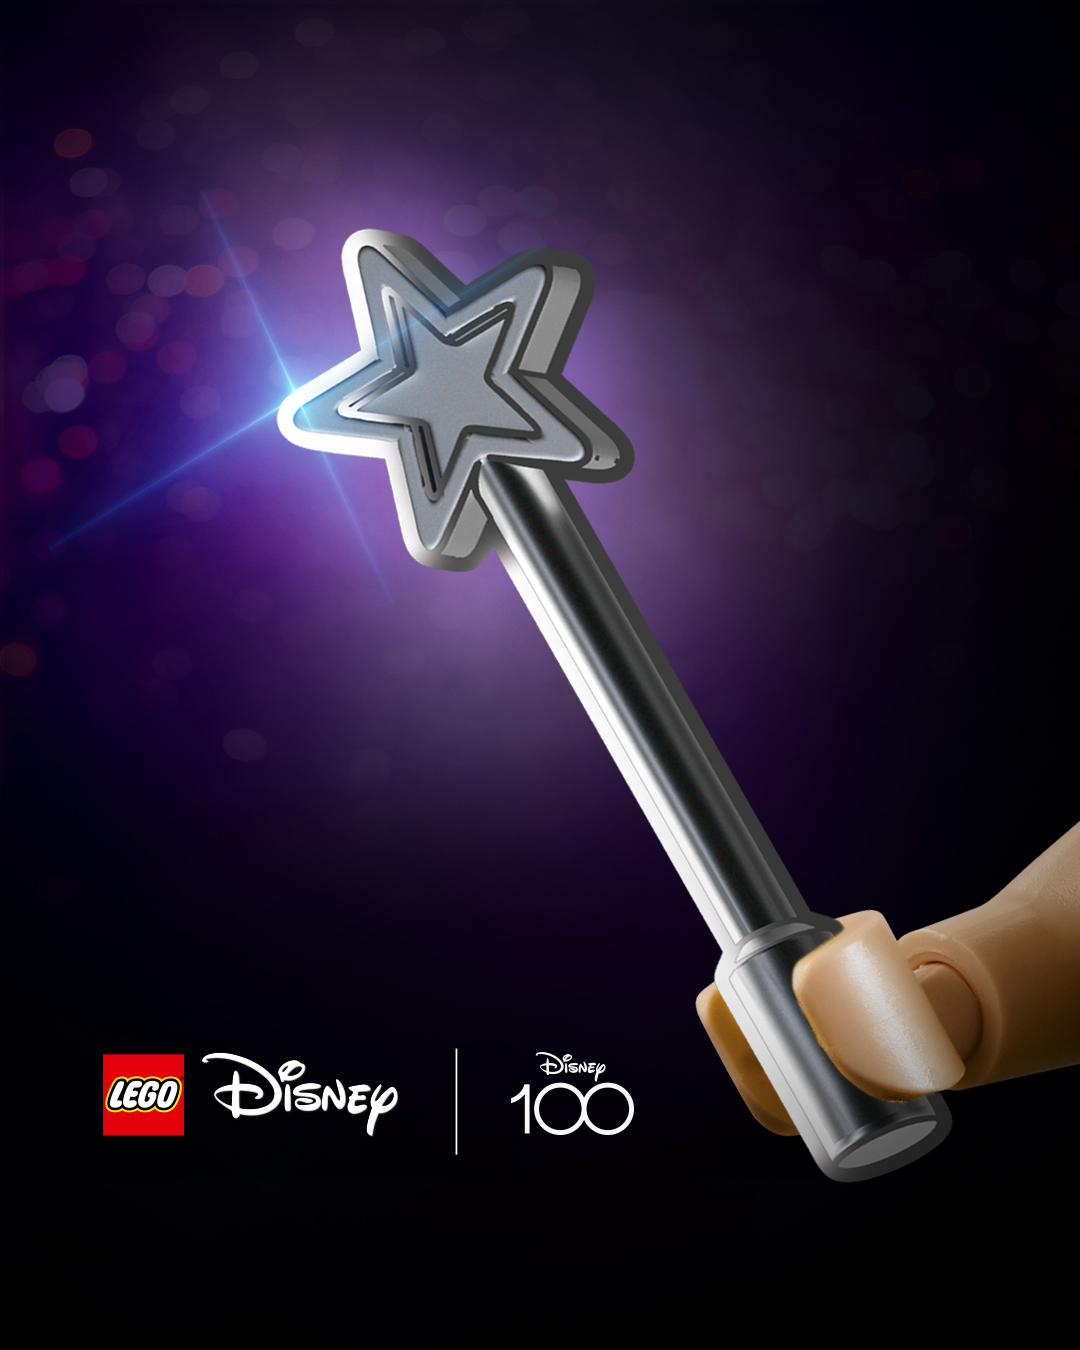 LEGO poursuit les célébrations Disney 100 avec des mini-figurines